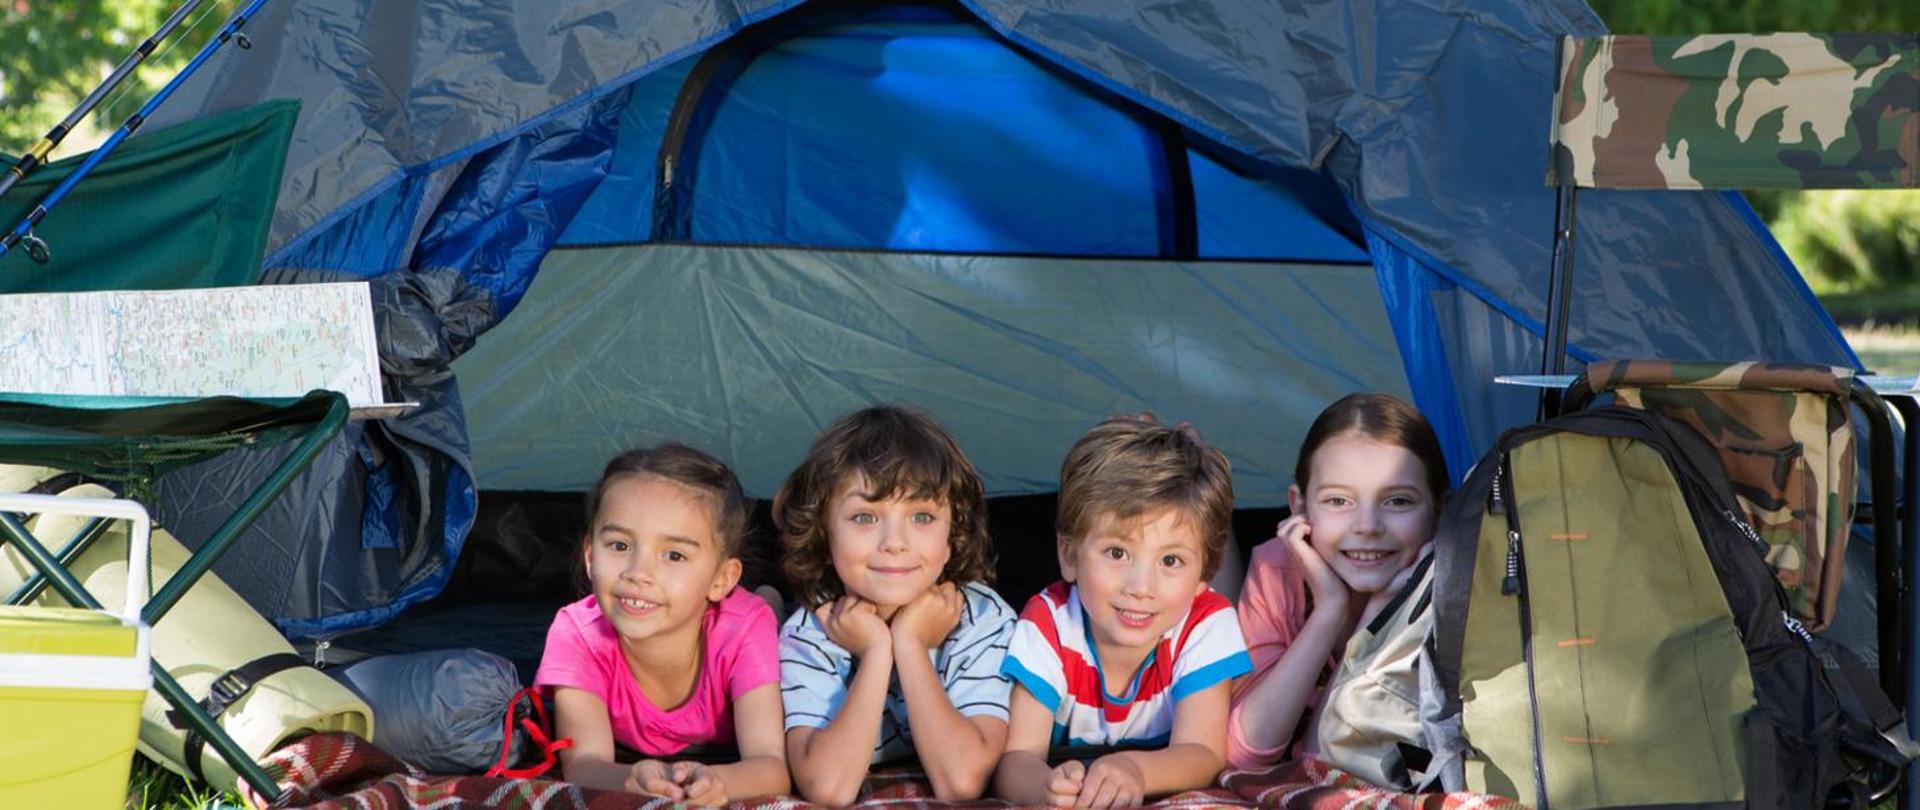 Obóz pod namiotami. Czwórka małych dzieci pod namiotem. Z lewej strony karimata, śpiwór i turystyczna lodówka. Z prawej strony plecak i krzesło turystyczne. 